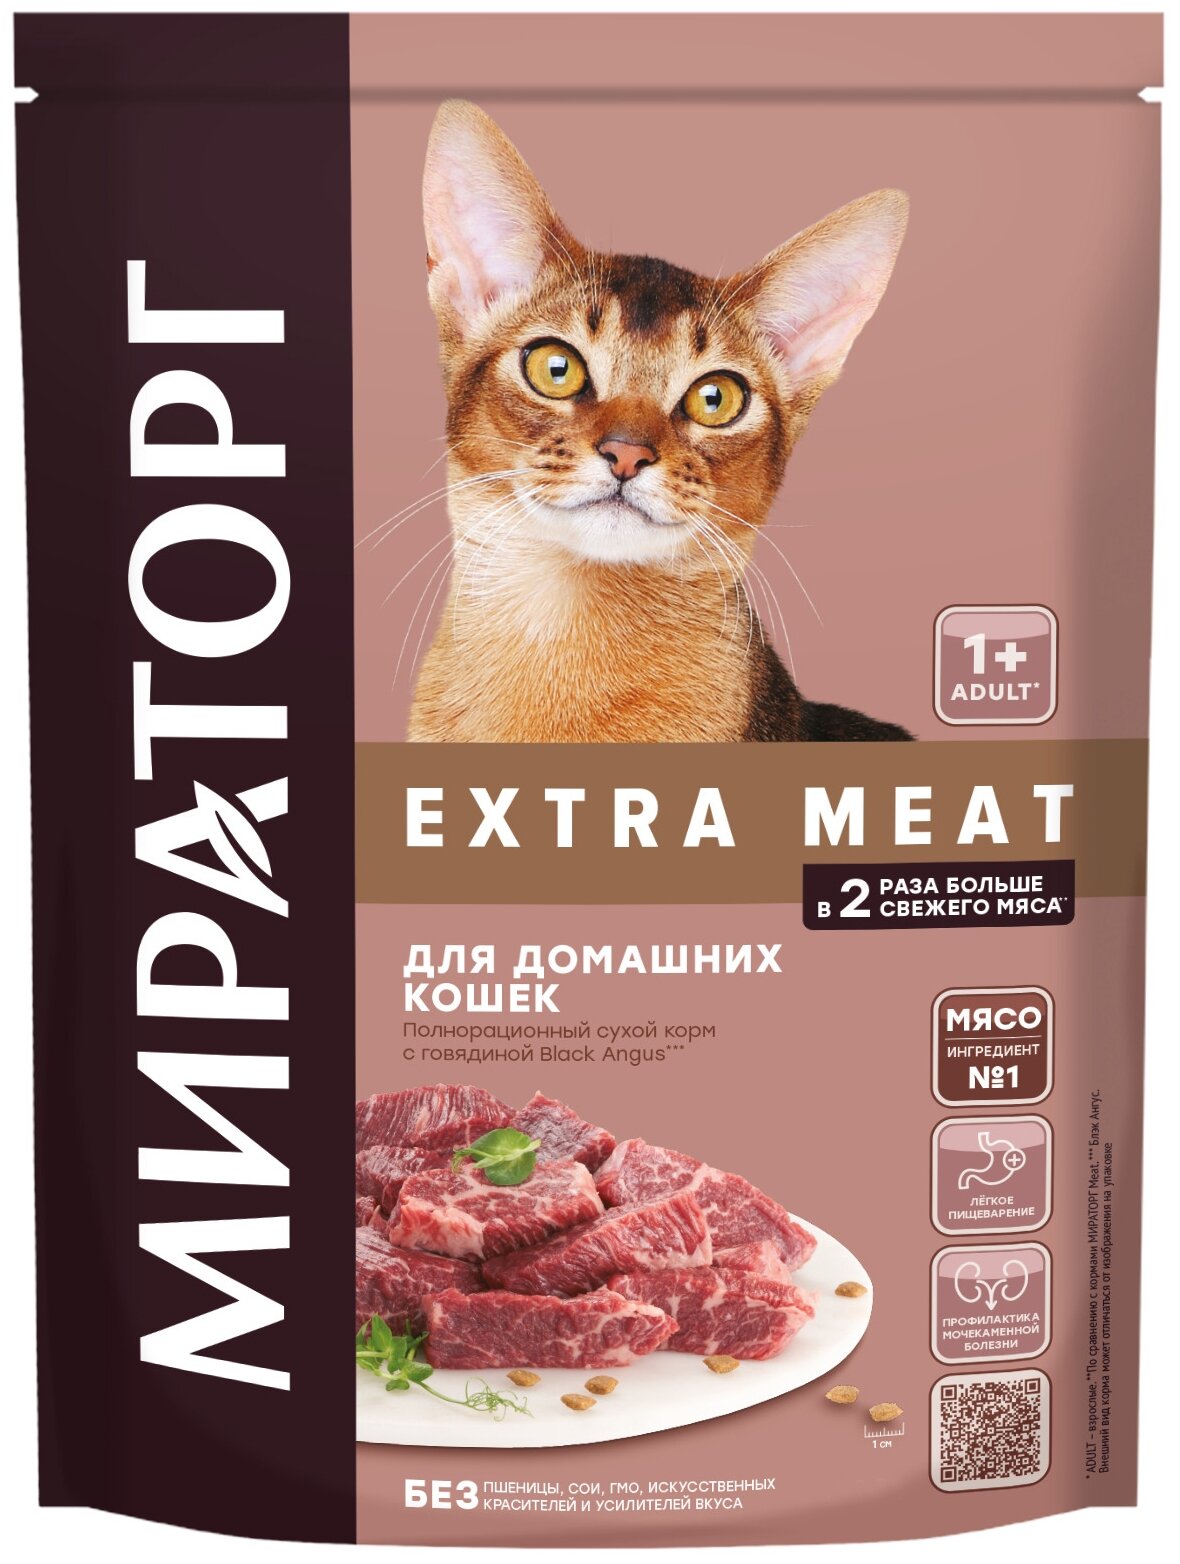 Полнорационный сухой корм Extra Meat с говядиной Black Angus для домашних кошек старше 1 года 0,19 кг